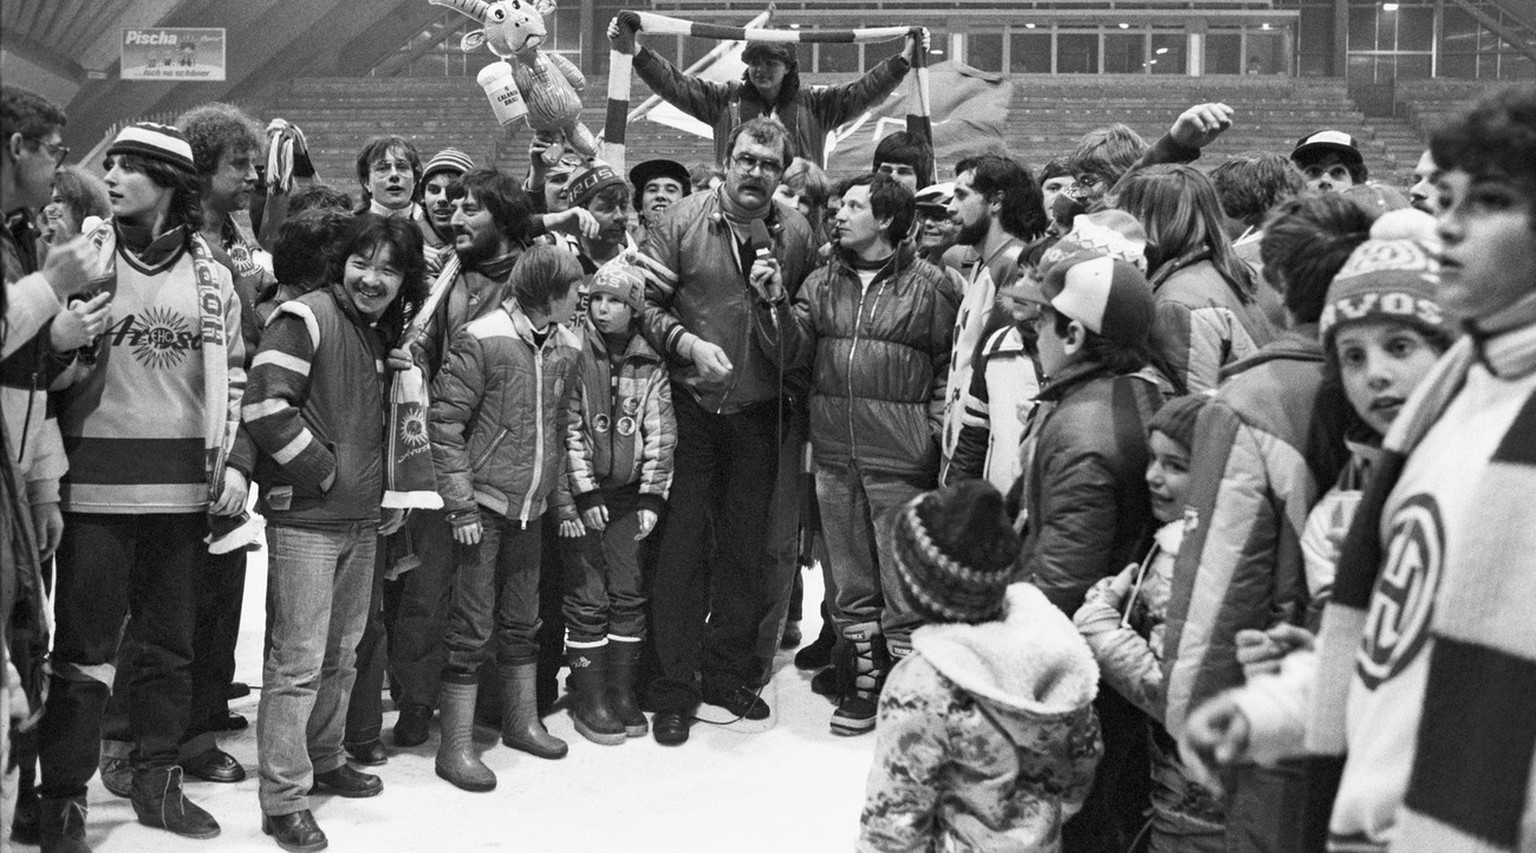 Jubel bei den Arosa-Fans, nachdem sich der EHC Arosa mit einem 7:2-Auswaertssieg am 24. Februar 1982 in Davos gegen seinen Erzrivalen Davos den Meistertitel gesichert hat. Inmitten der Fans wird Train ...